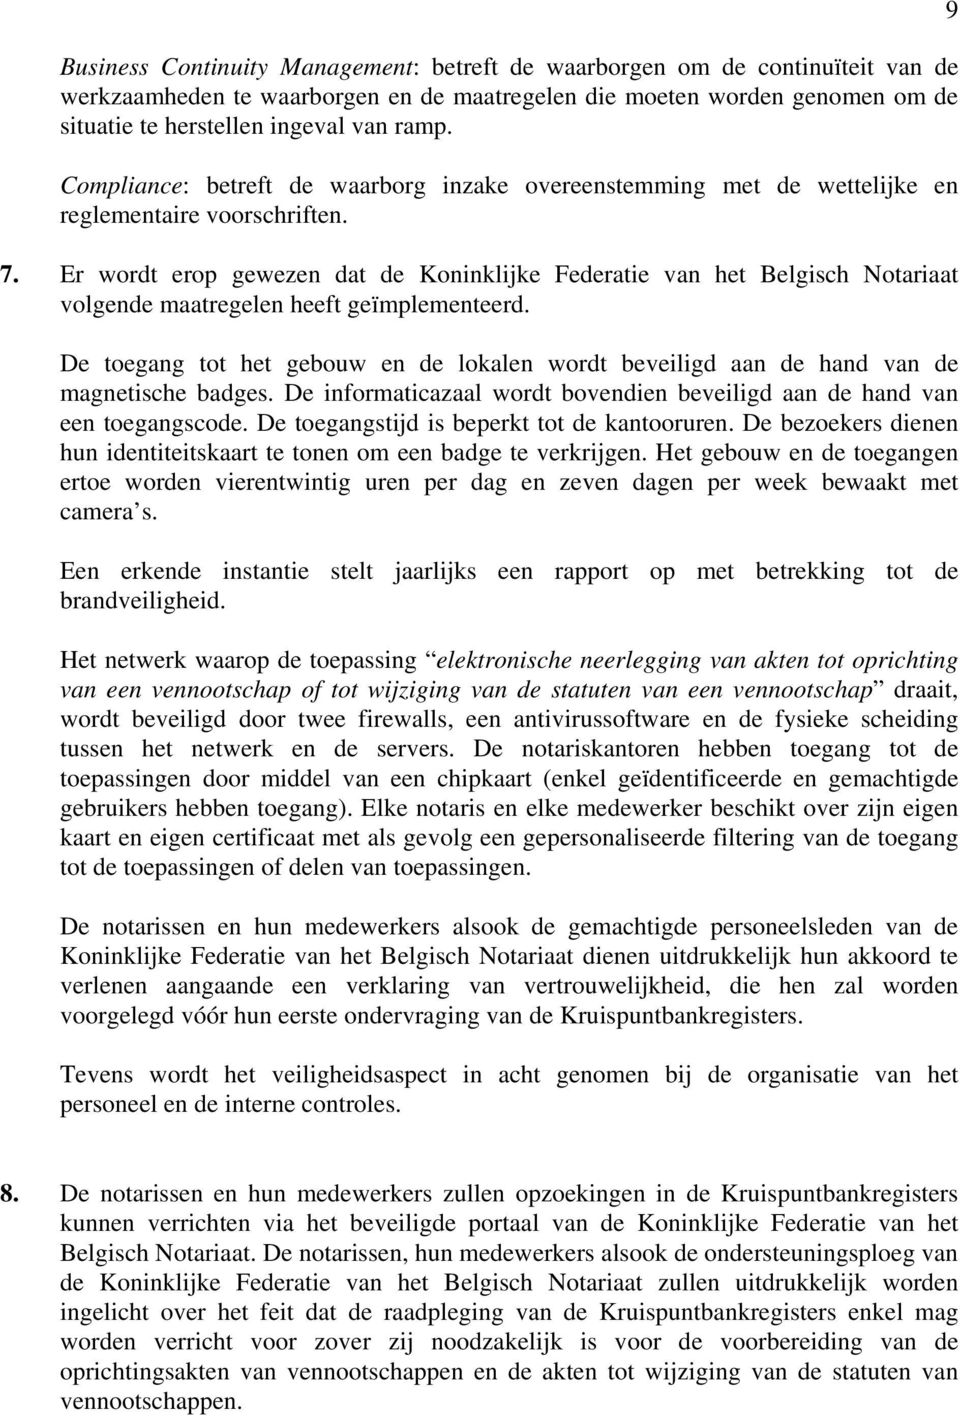 Er wordt erop gewezen dat de Koninklijke Federatie van het Belgisch Notariaat volgende maatregelen heeft geïmplementeerd.